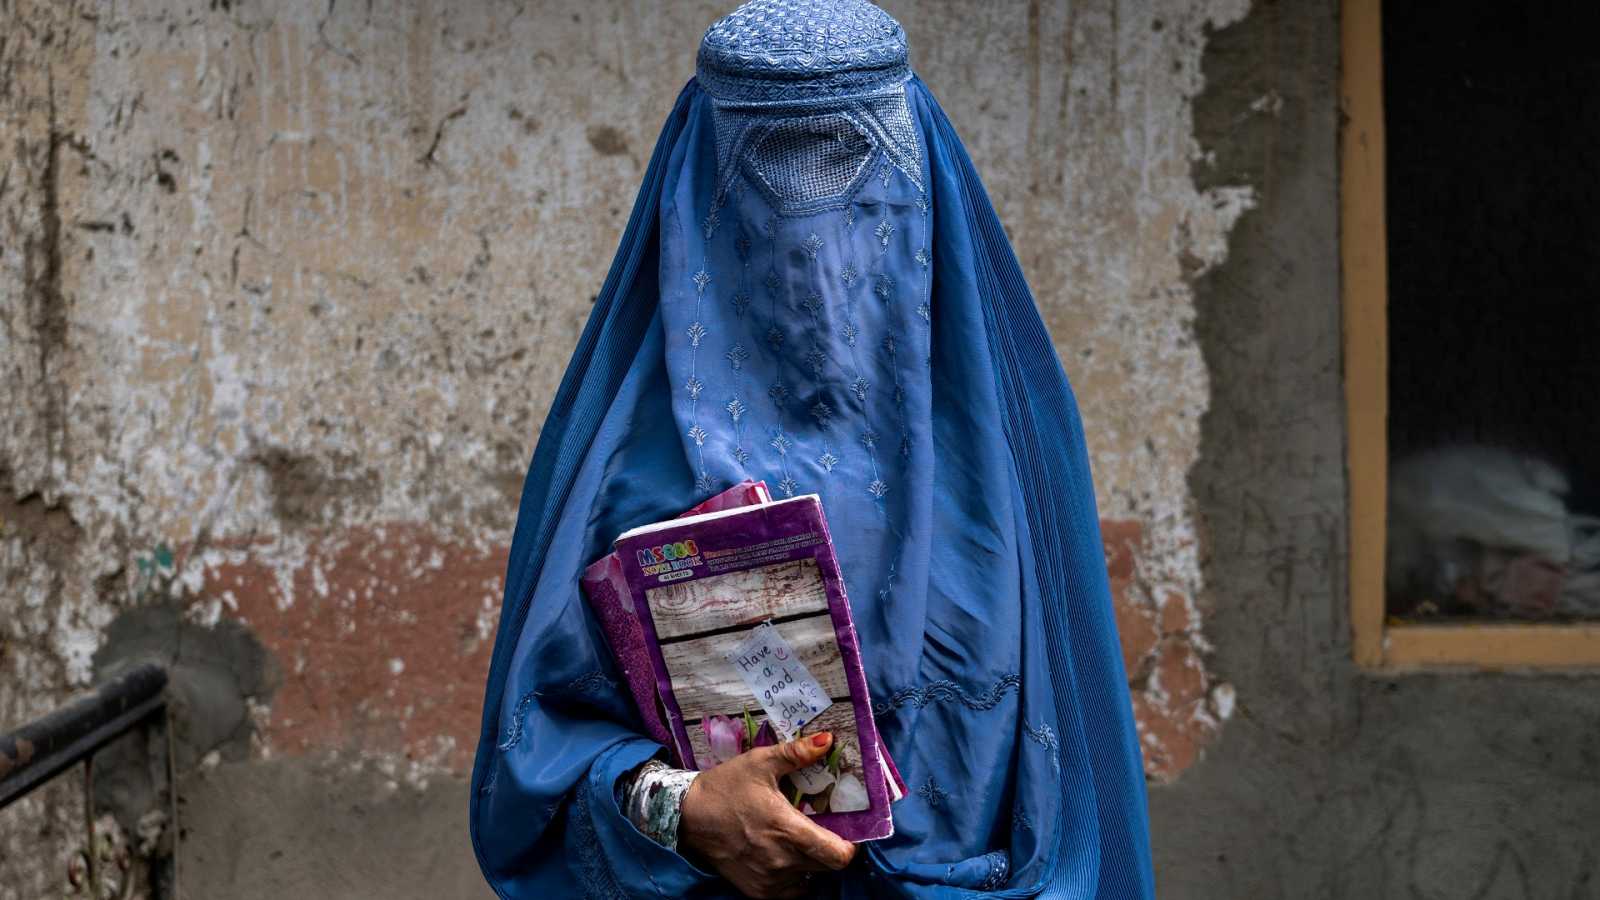 Niñas y mujeres, no tienen derechos y además las envenenan: Afganistán